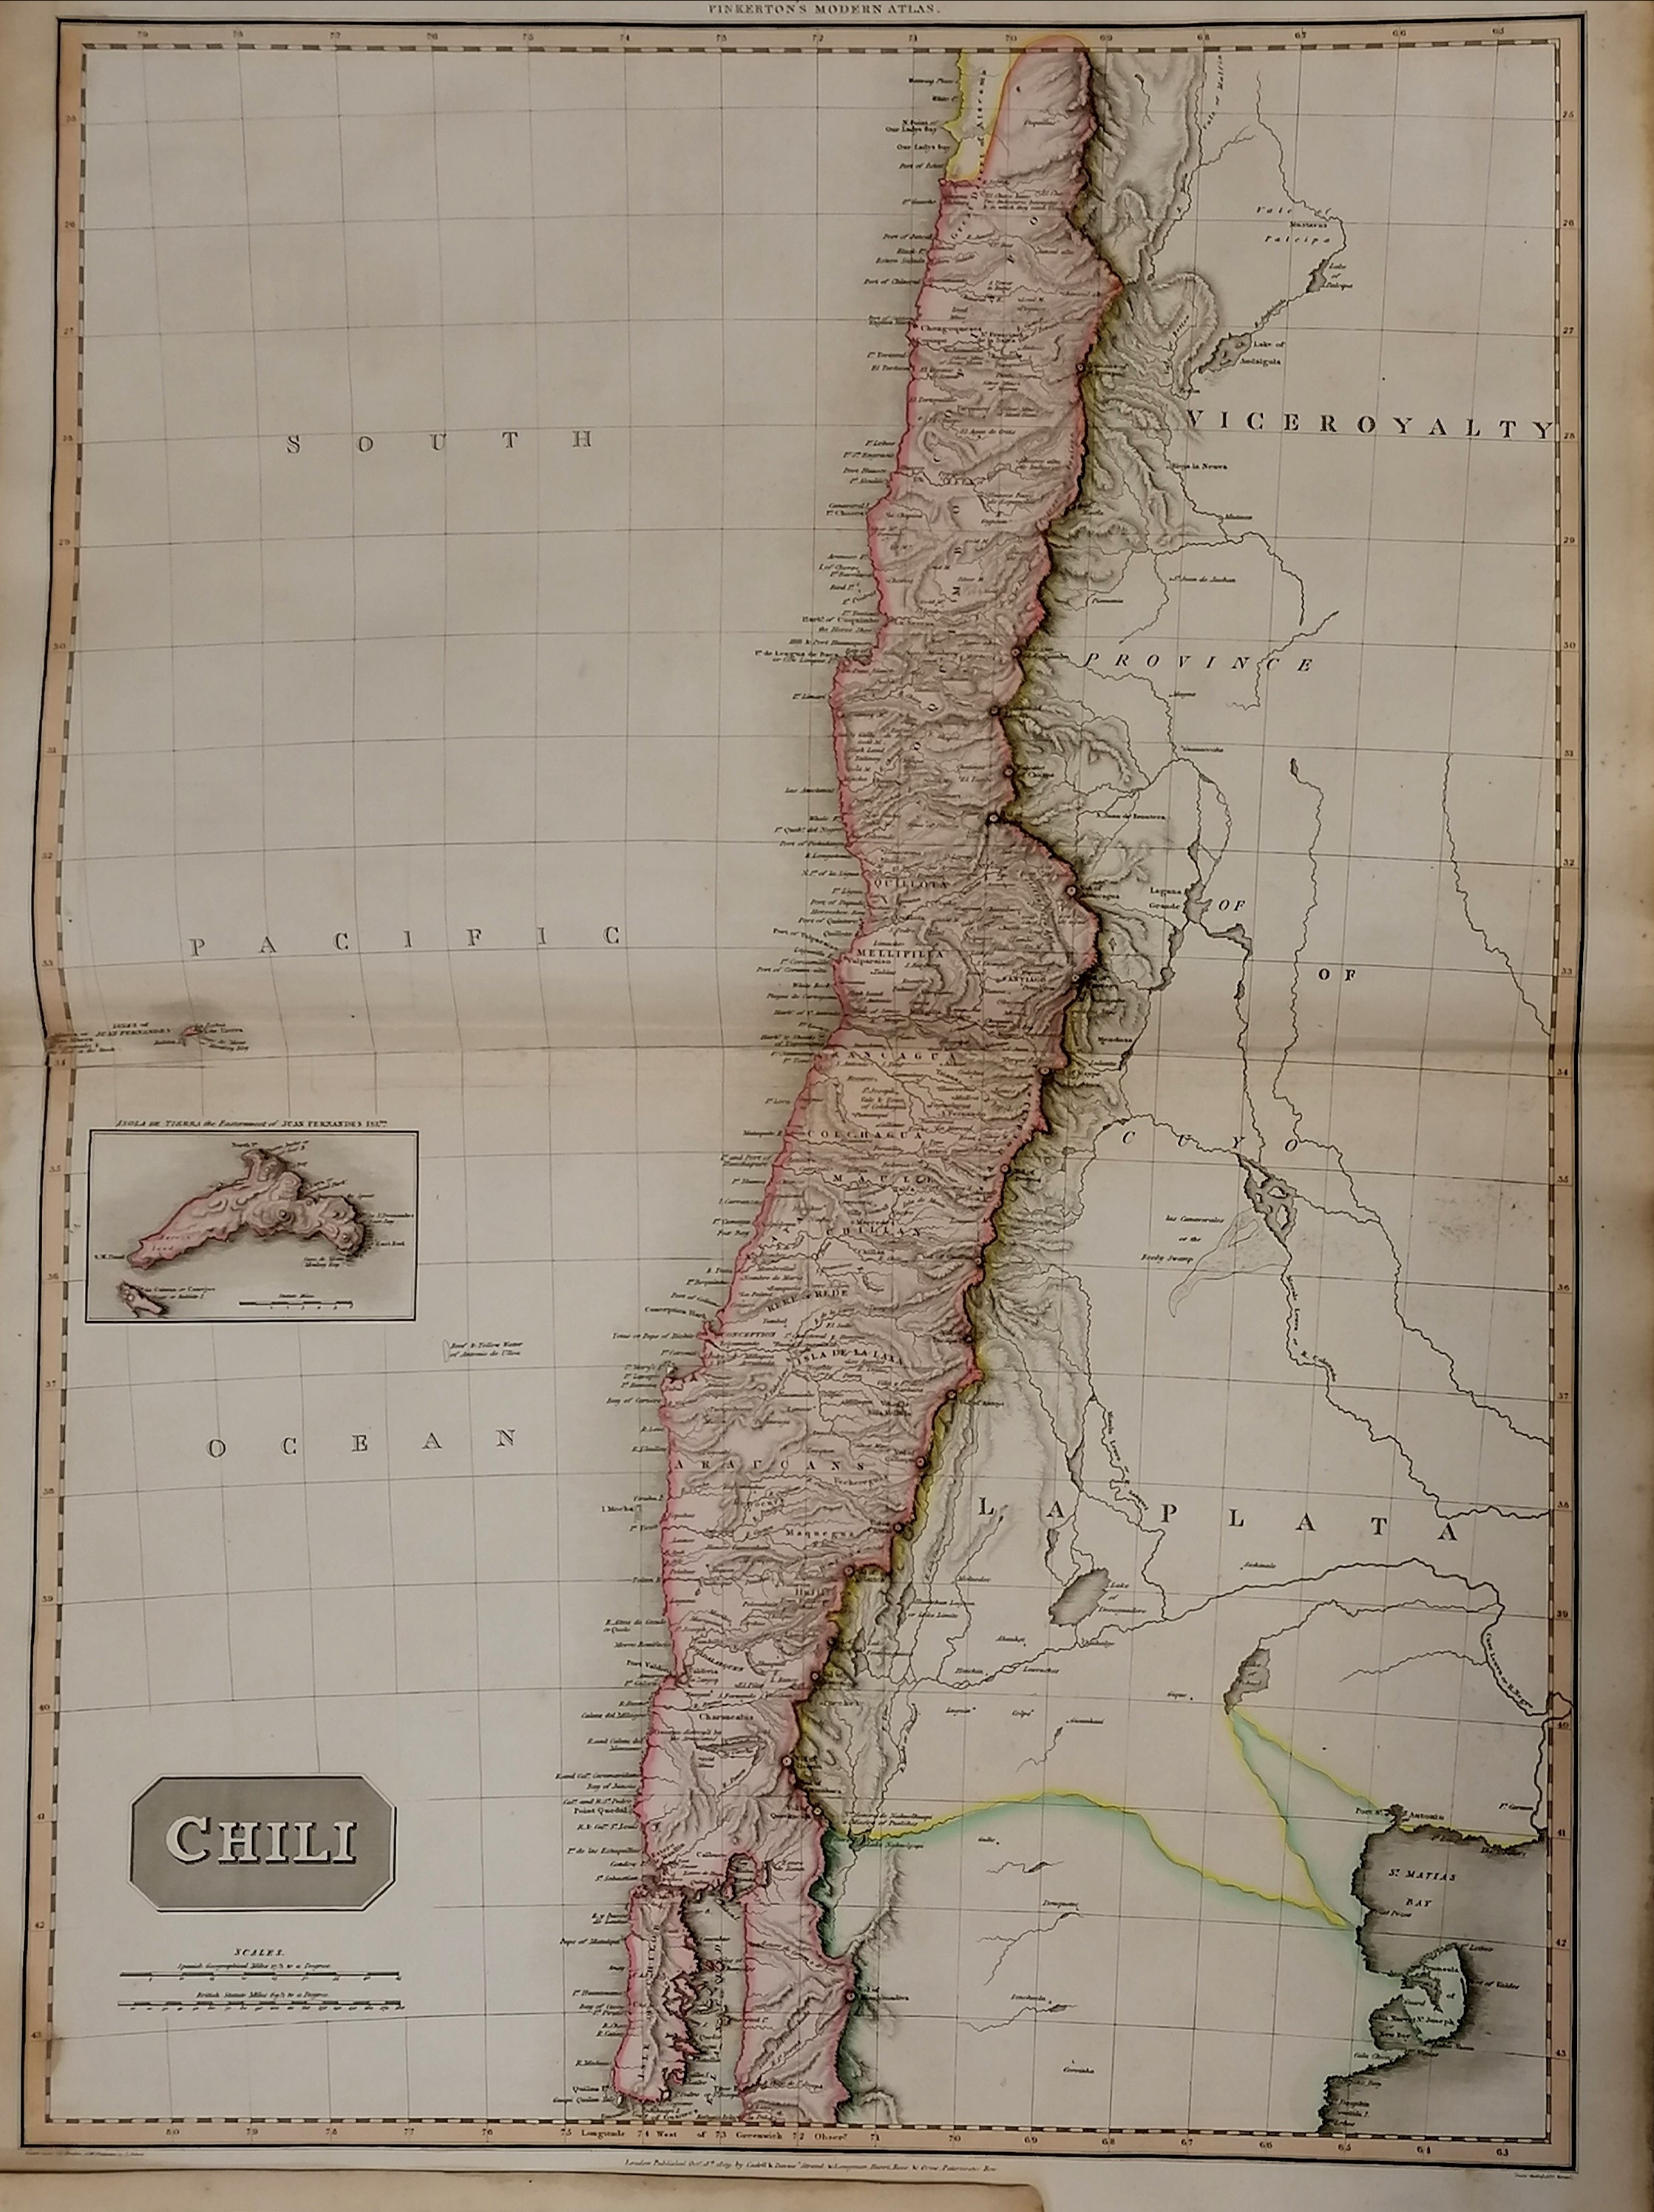 3 x large Pinkertons maps 1812 La Plata, 1810 Peru & 1809 Chili (Chile) - 84cm x 55cm - Image 2 of 6